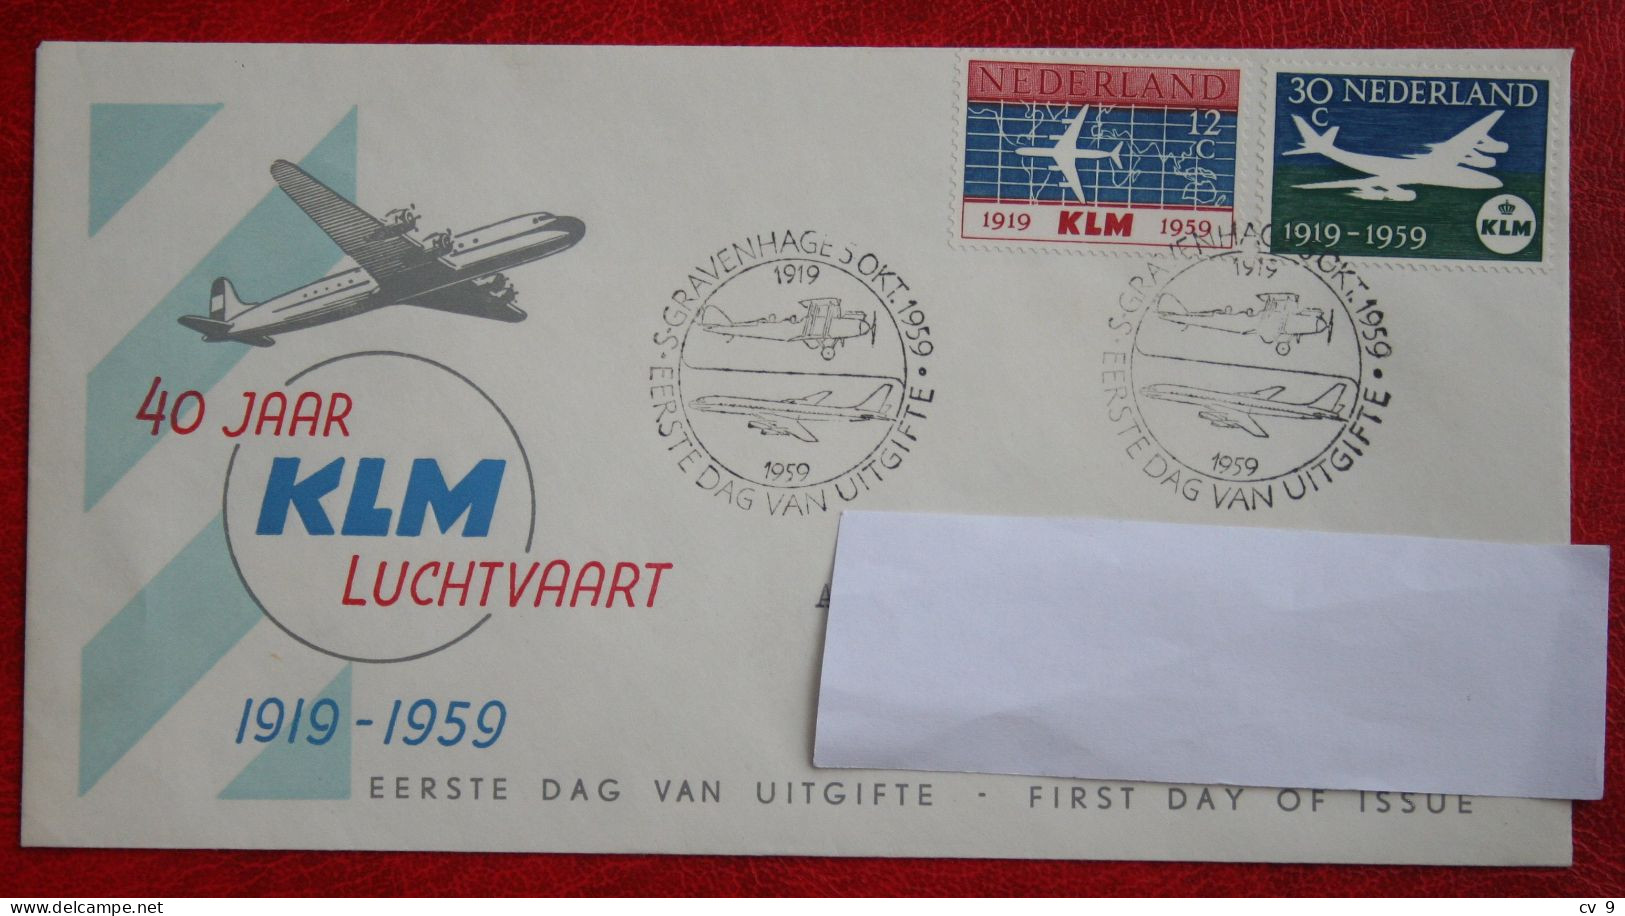 FDC E40 40 40 Jaar KLM Flugzeug Airplane NVPH 729-730 (Mi 737-738); 1959 With Address NEDERLAND NIEDERLANDE NETHERLANDS - FDC